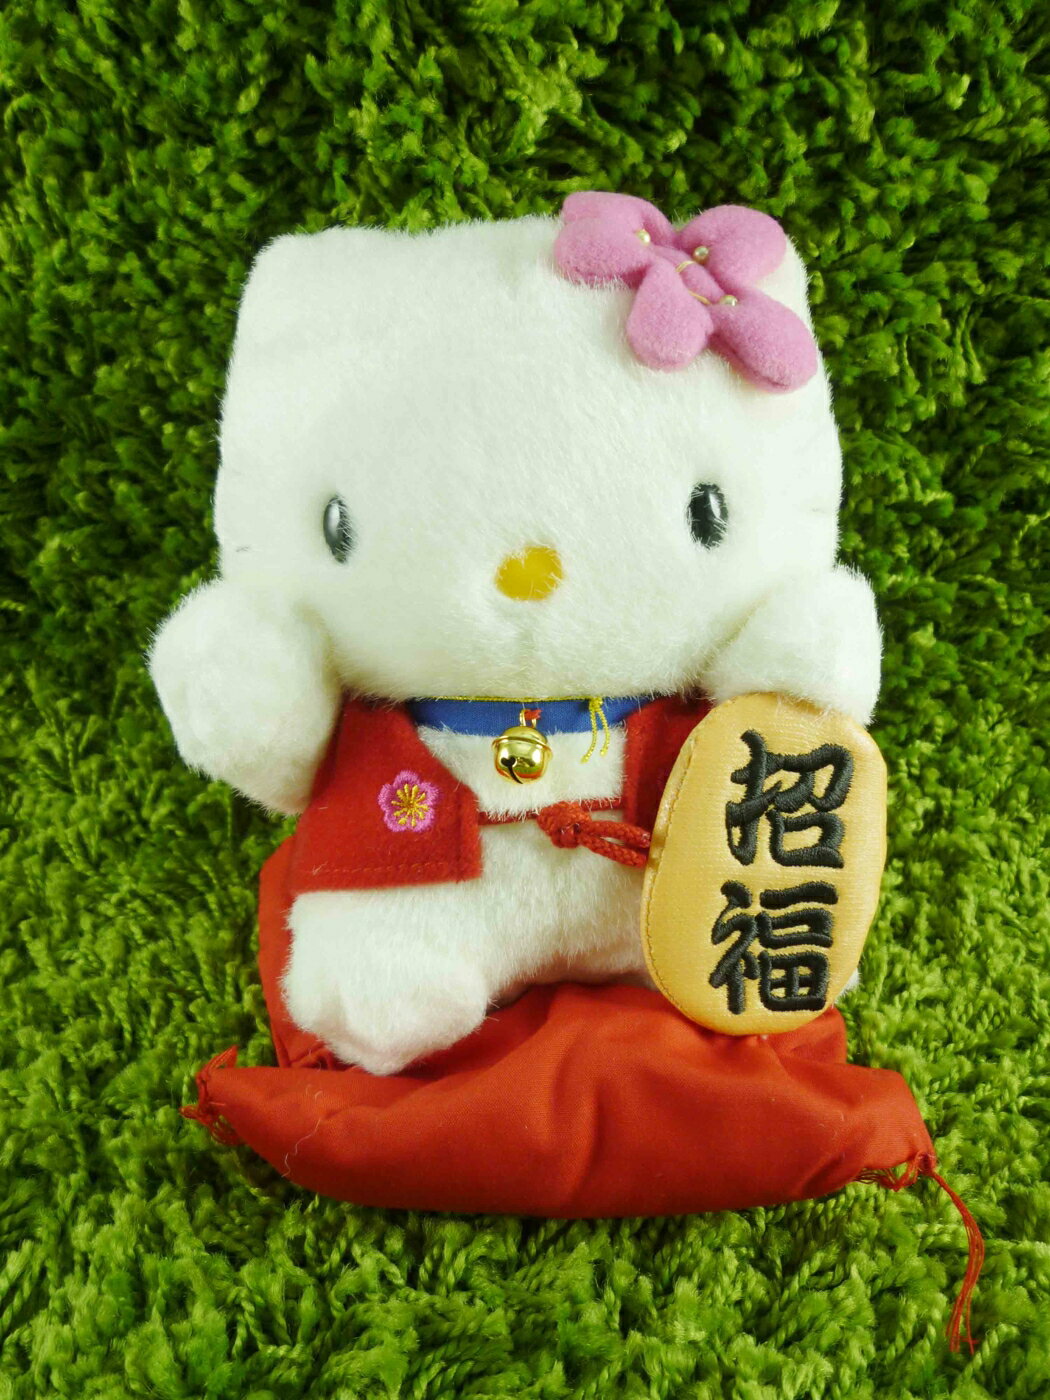 【震撼精品百貨】Hello Kitty 凱蒂貓 KITTY絨毛娃娃-招福圖案-M 震撼日式精品百貨